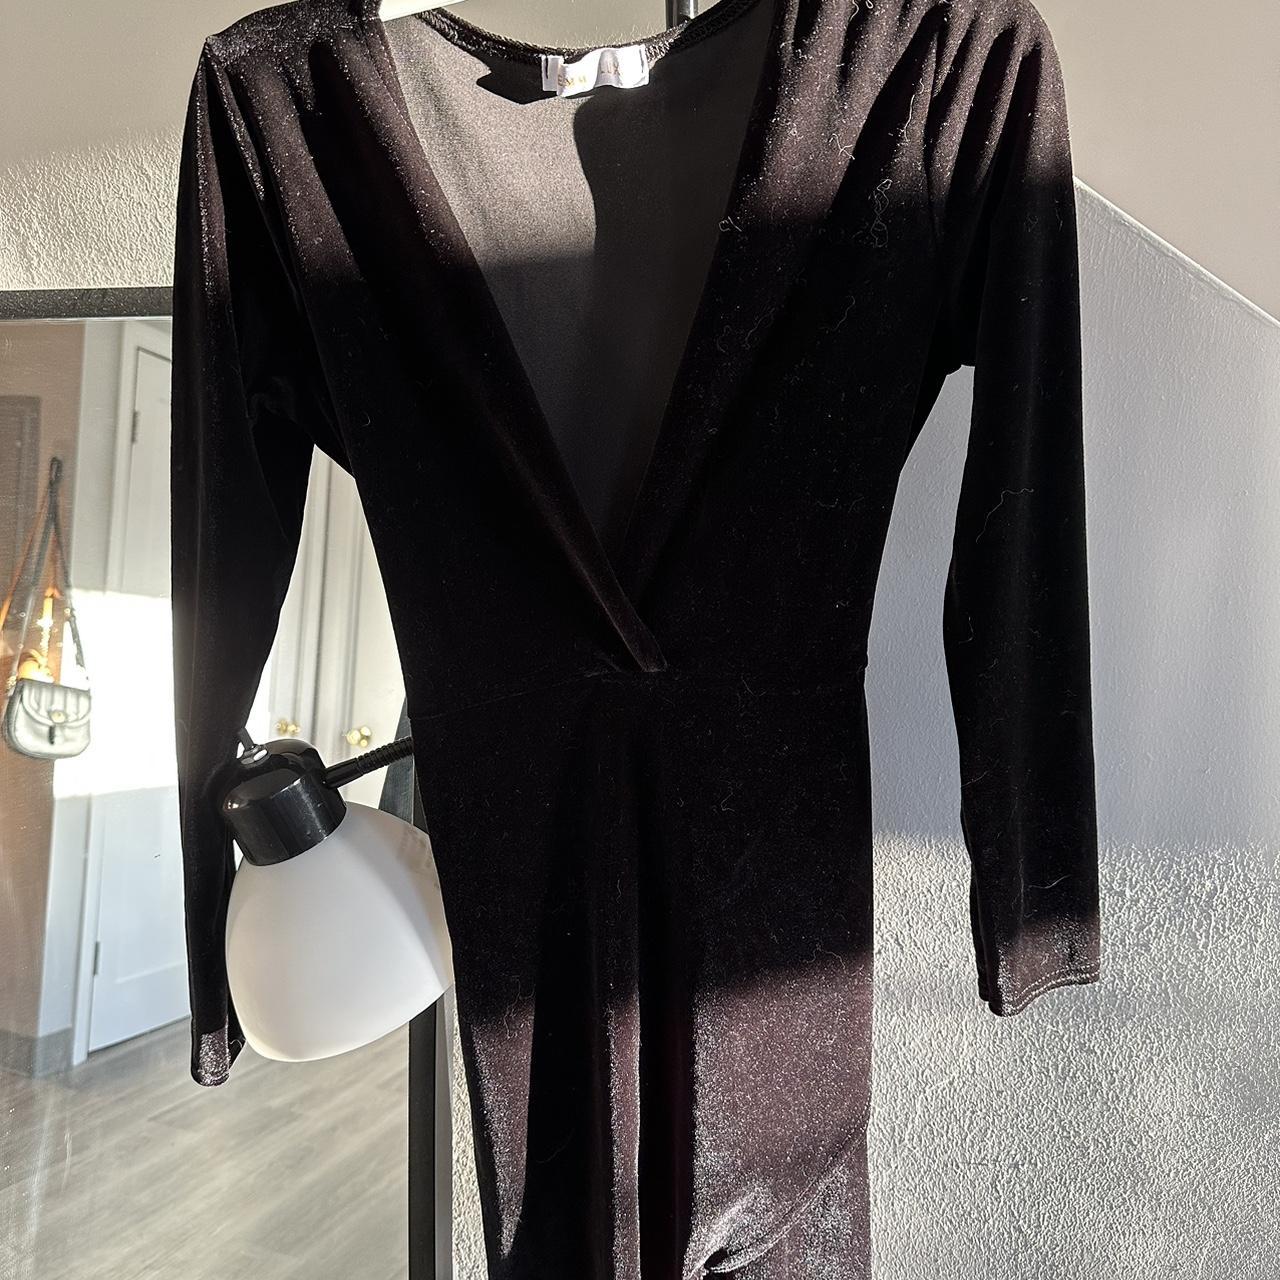 Femme Luxe Women's Black Dress